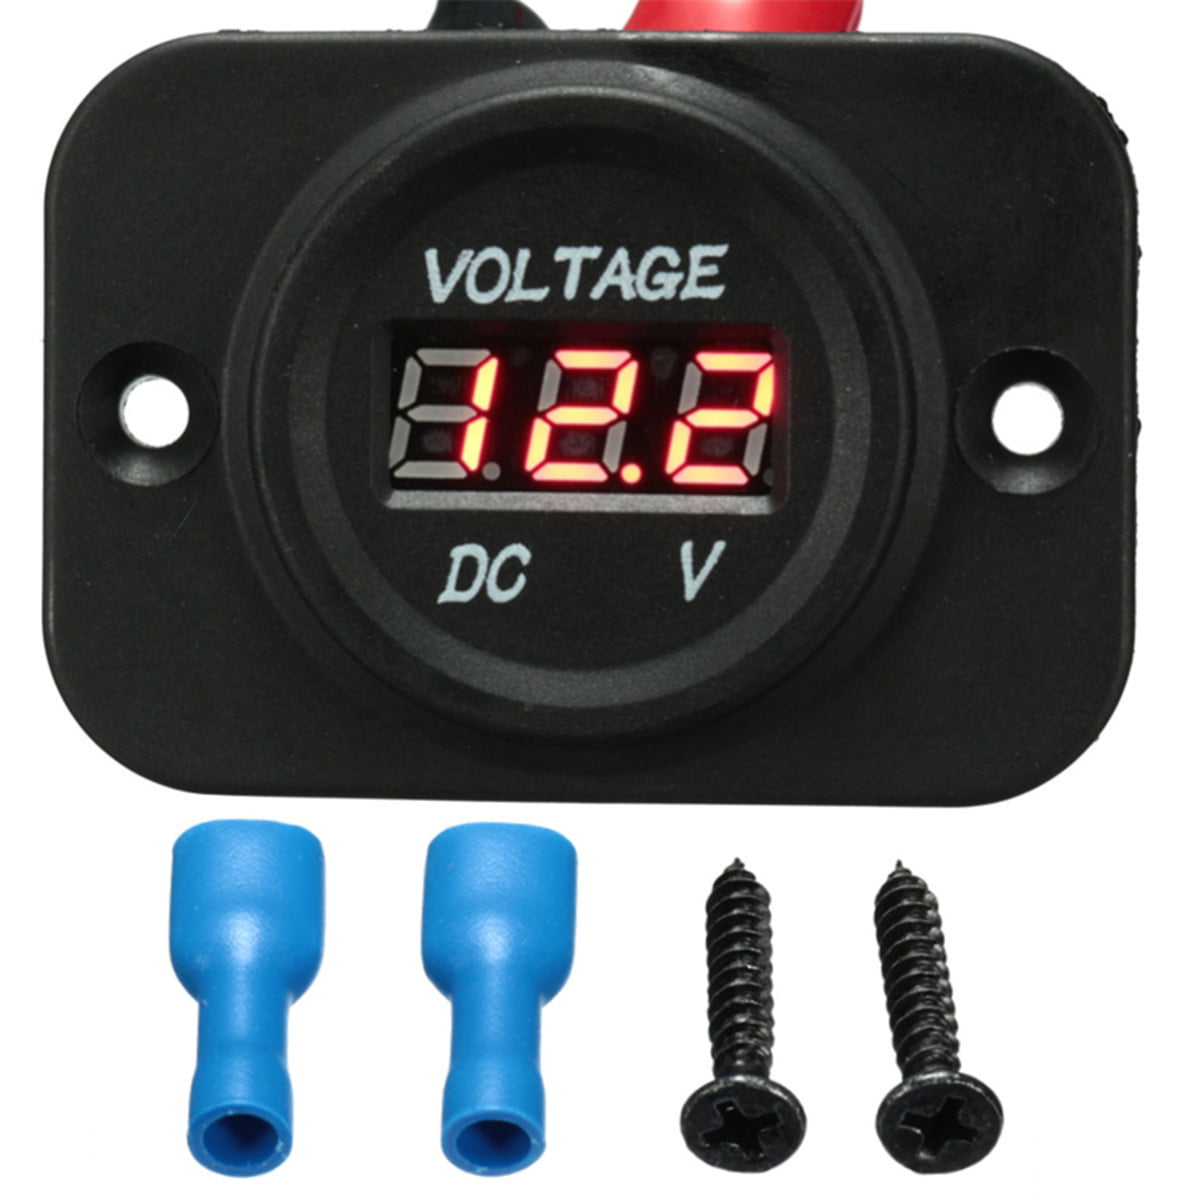 12-24V Digital LED Panel DC Voltmeter Voltage Meter Gauge Display Car Motor Boat